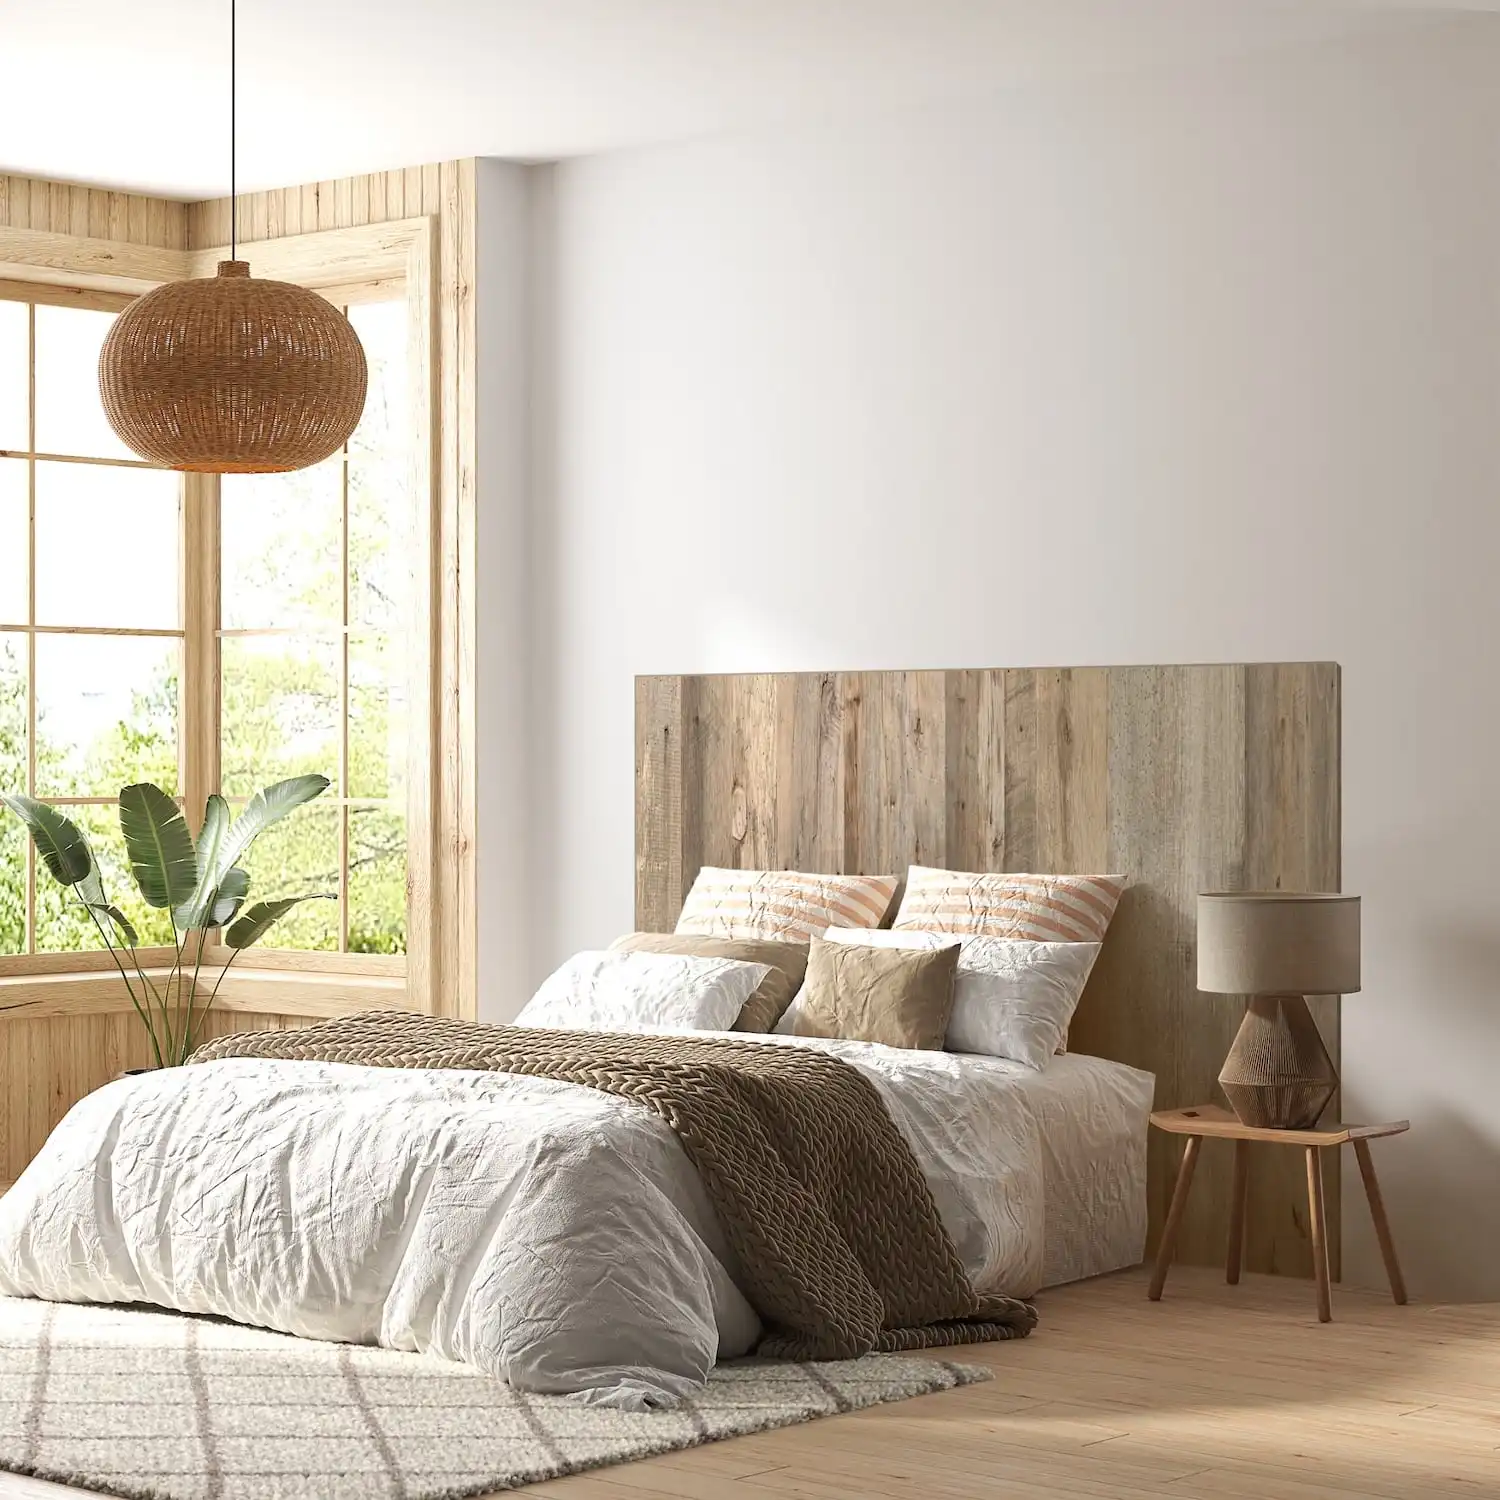  Une chambre confortable et minimaliste avec un cadre de lit en bois rustique, une literie blanche, des textiles aux tons chauds et une lumière naturelle. 